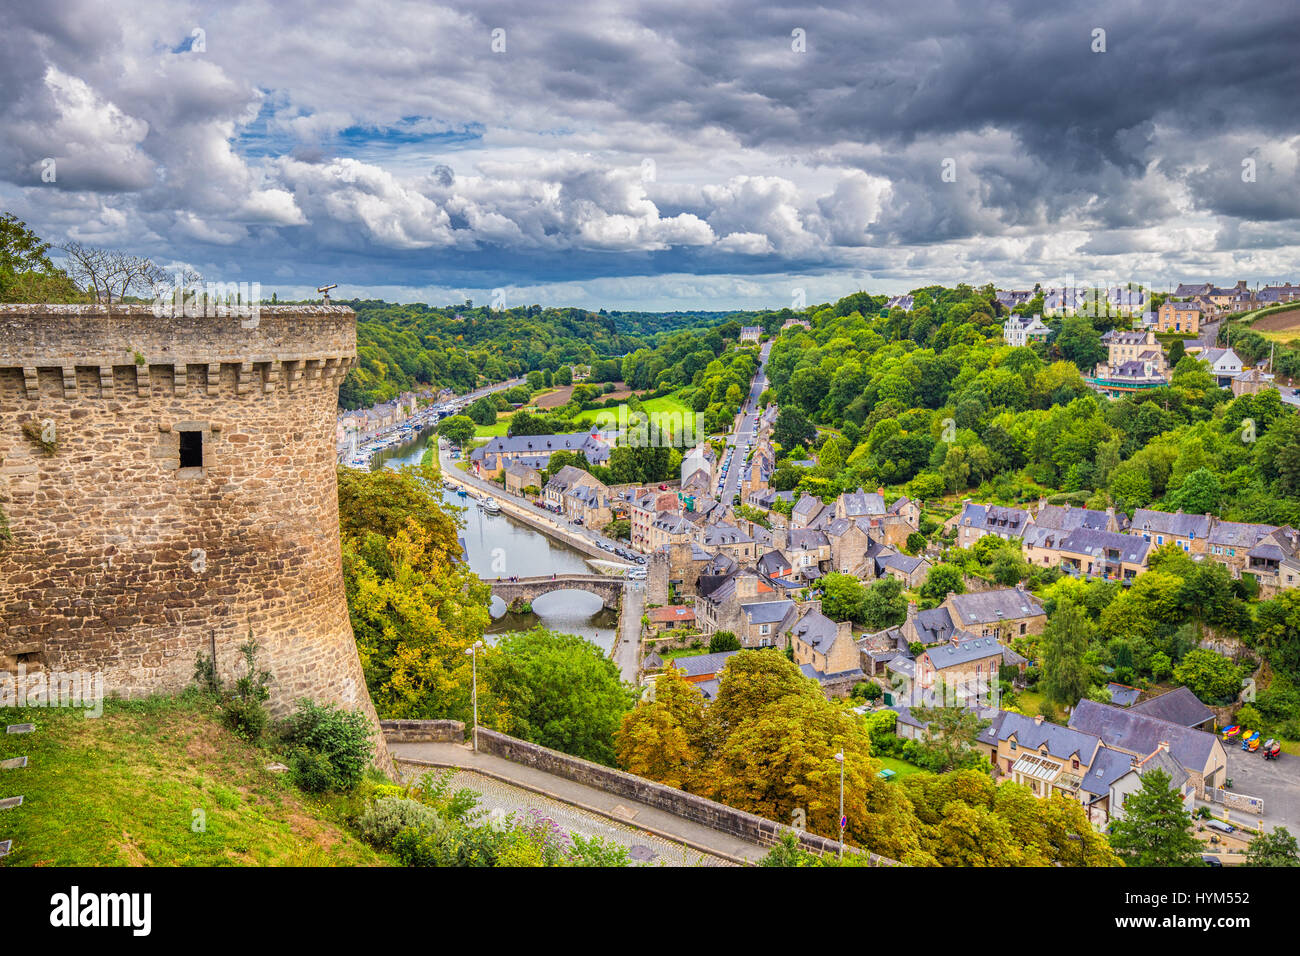 Luftbild von der historischen Stadt Dinan mit Rance Fluß mit dramatischen Wolkengebilde, Côtes-d ' Armor-Abteilung, Bretagne, Nordwesten Frankreichs Stockfoto